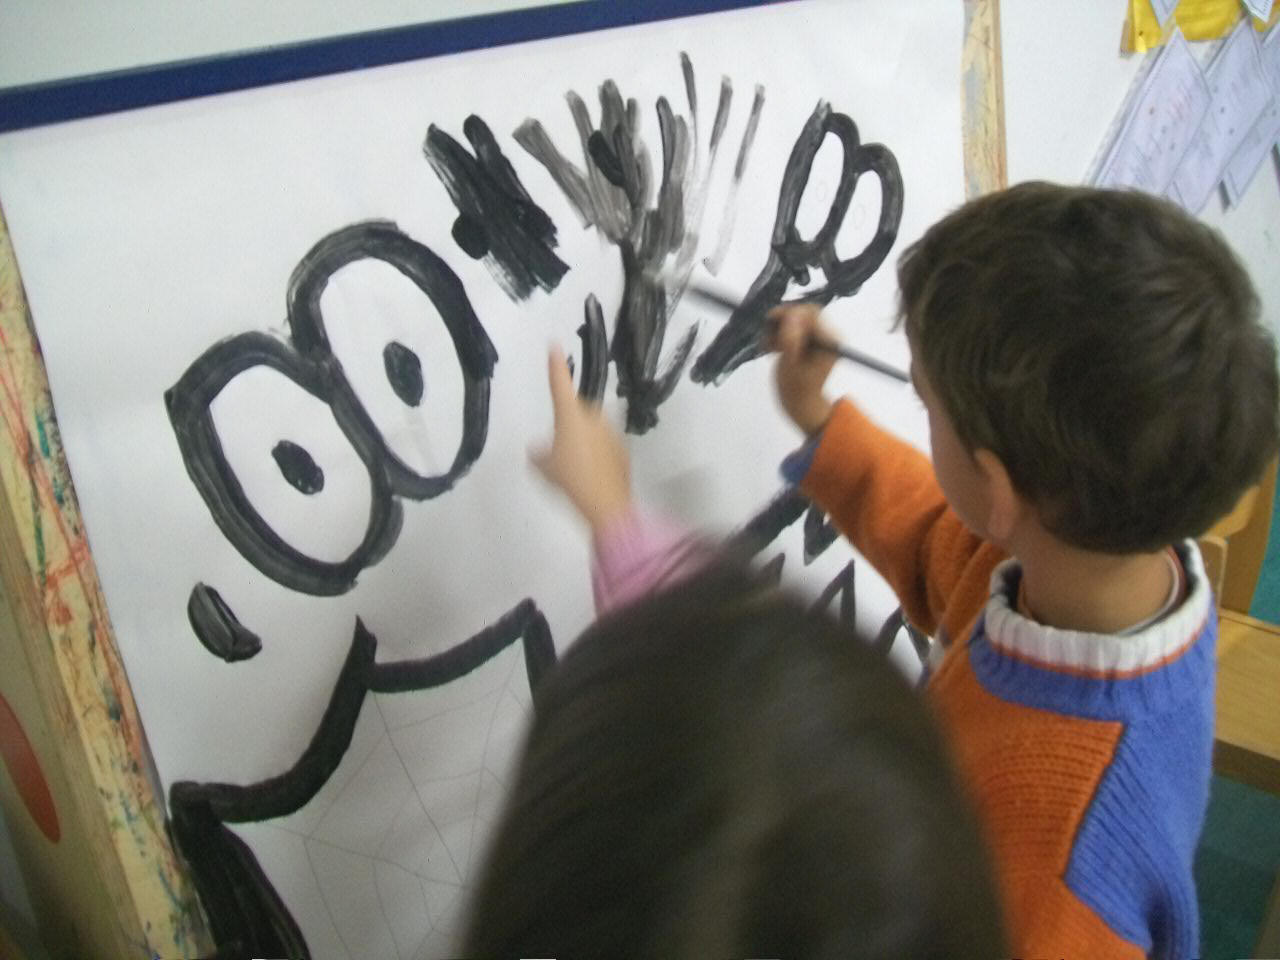 bambini mentre dipingono il cartellone con i colori e le forme della paura